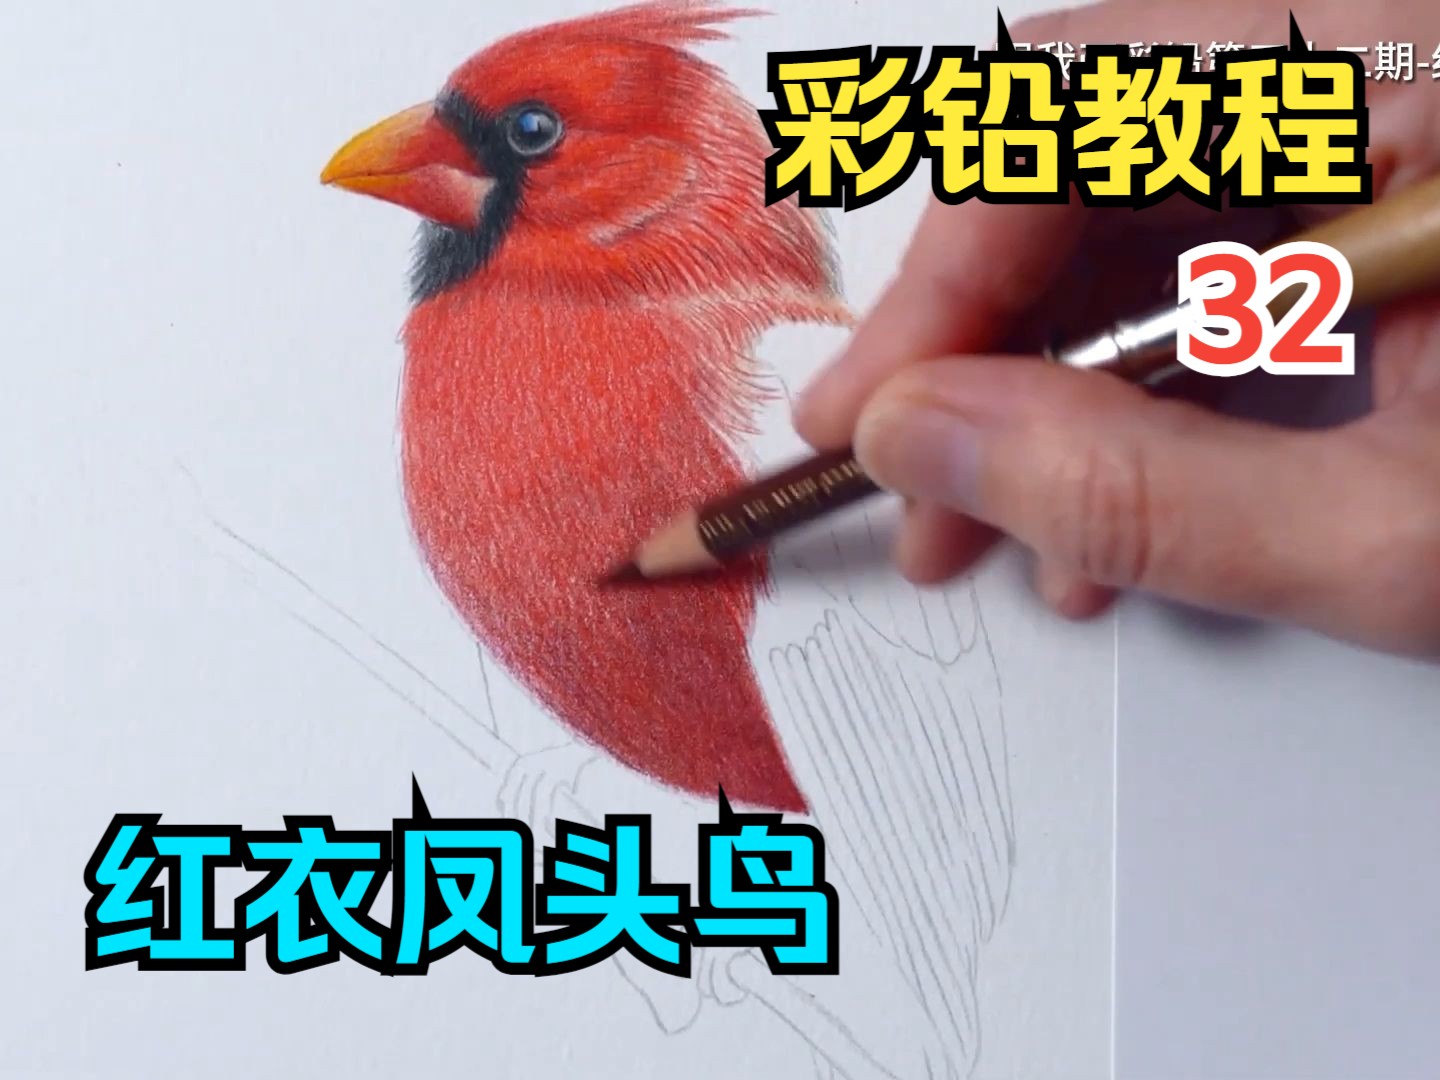 【跟我画】彩铅画教程·系列32期-红衣凤头鸟